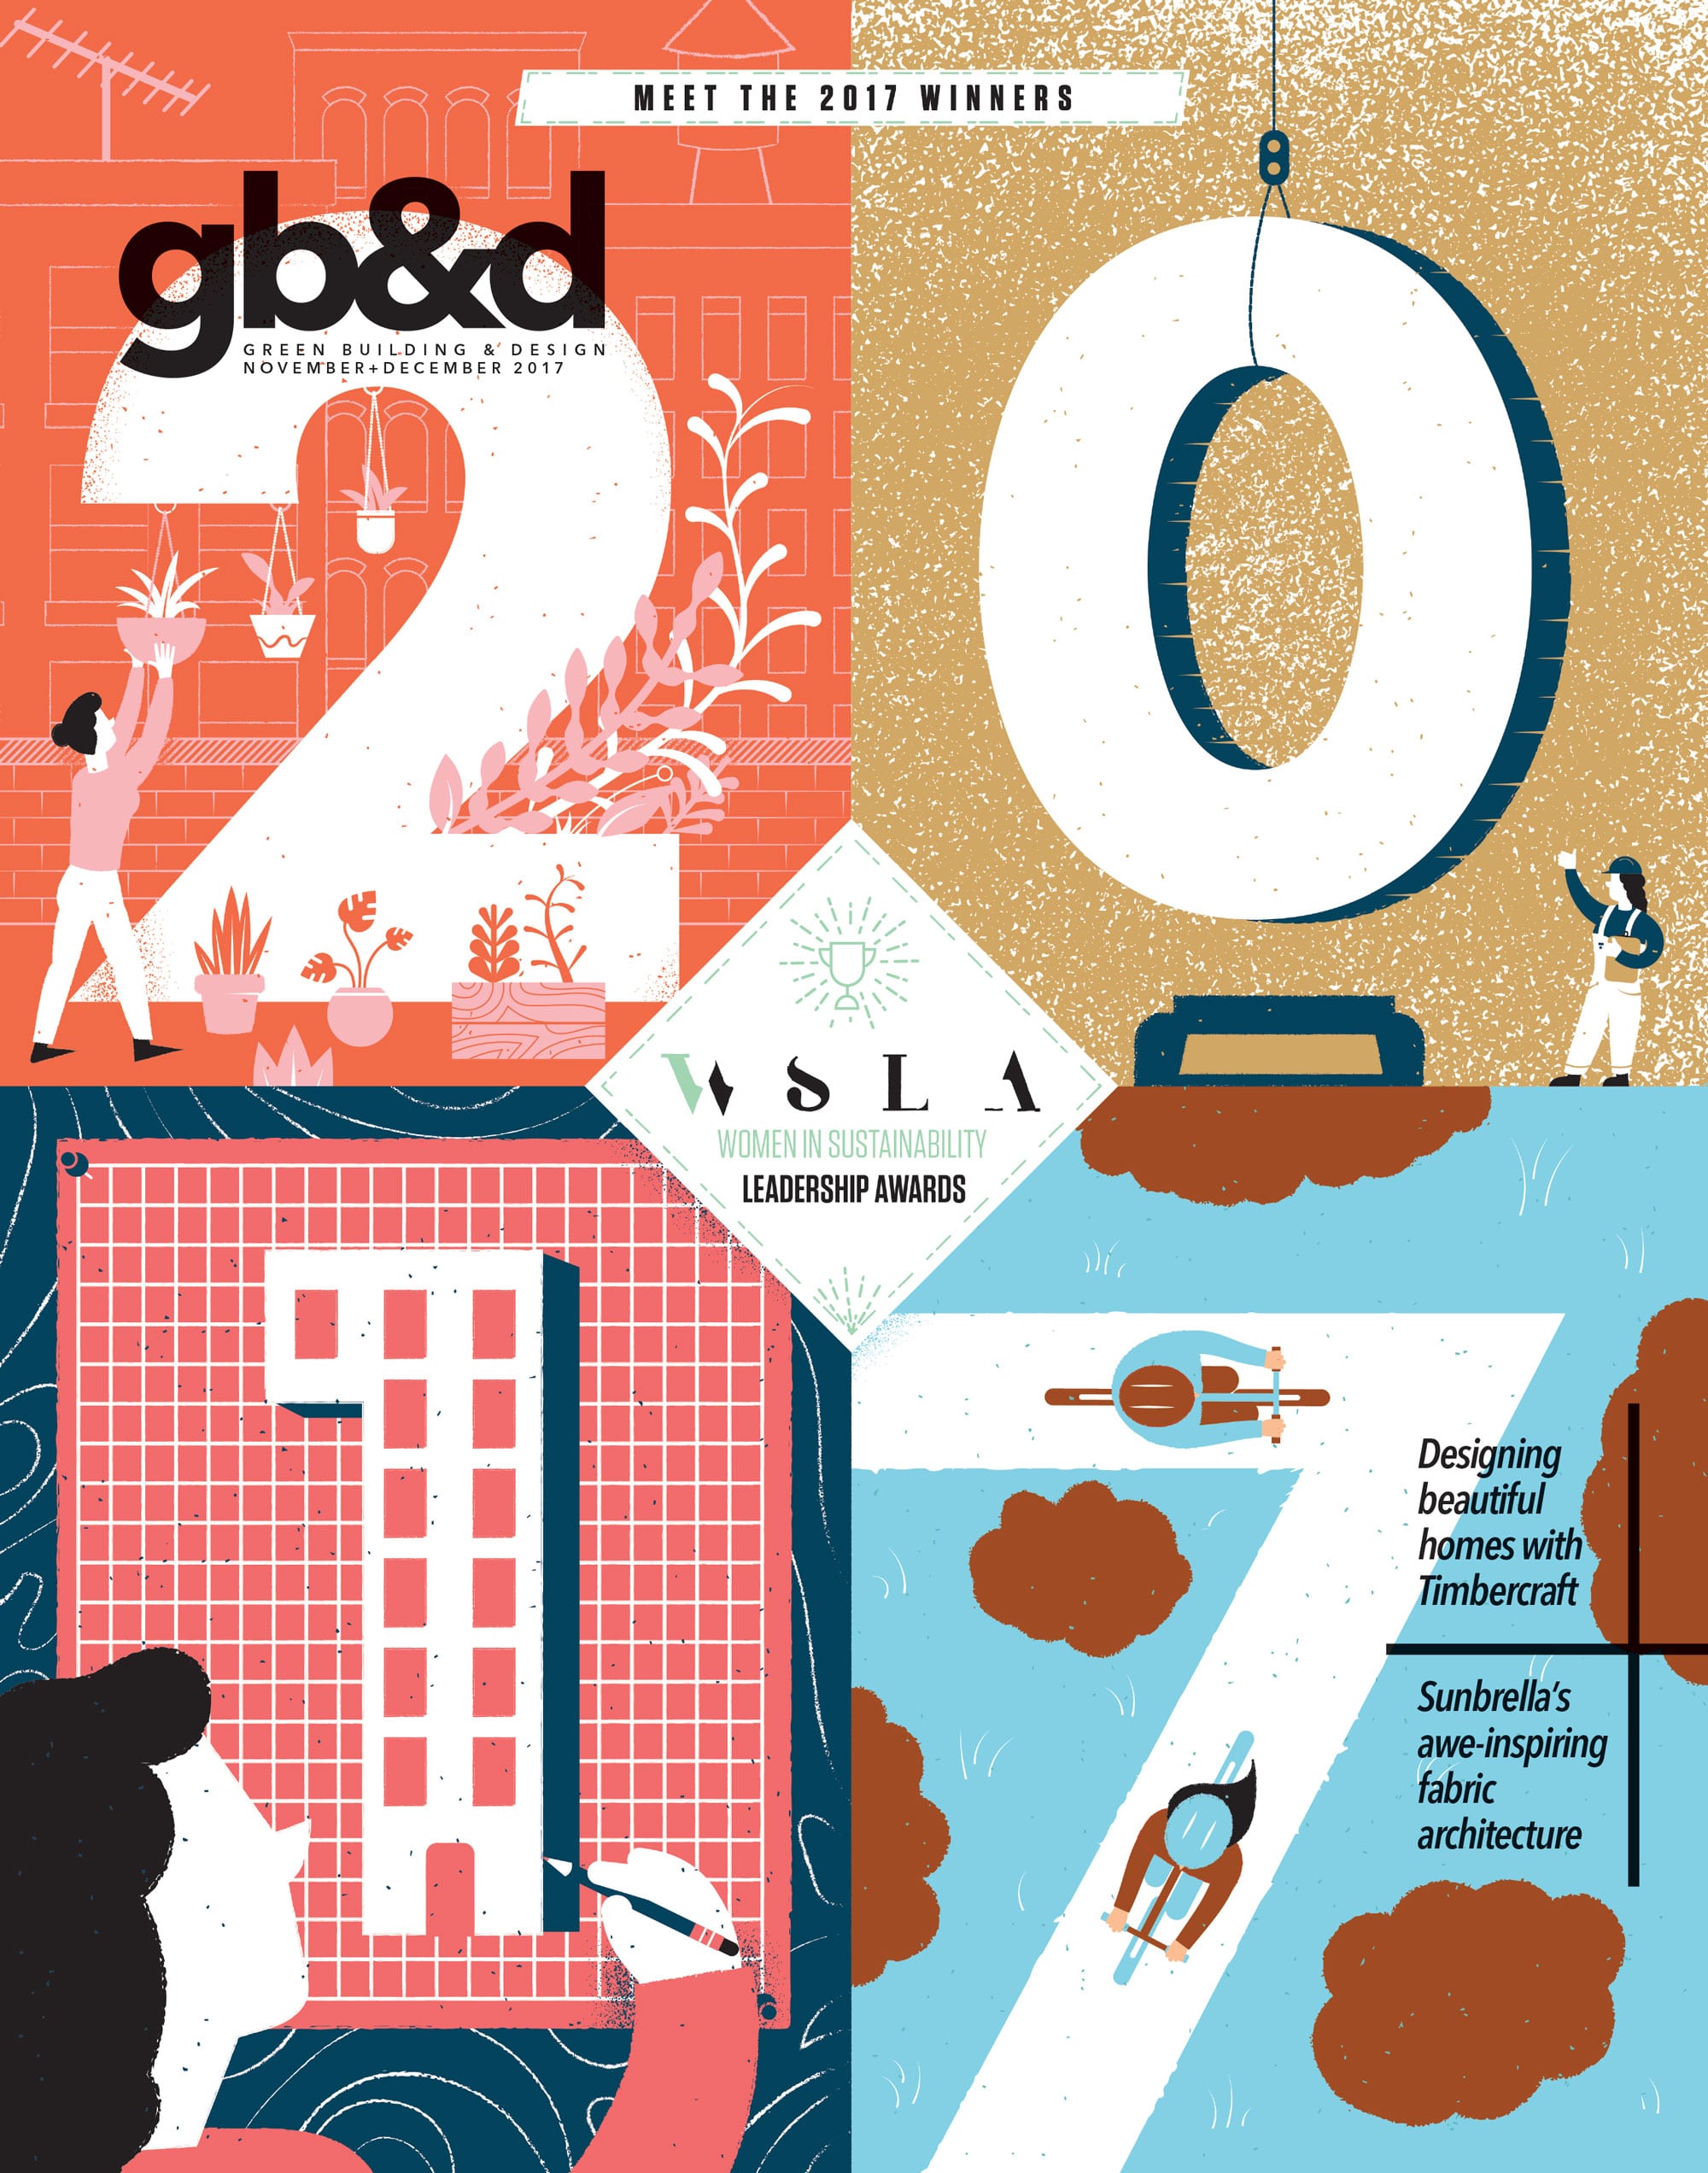 gb&d magazine cover